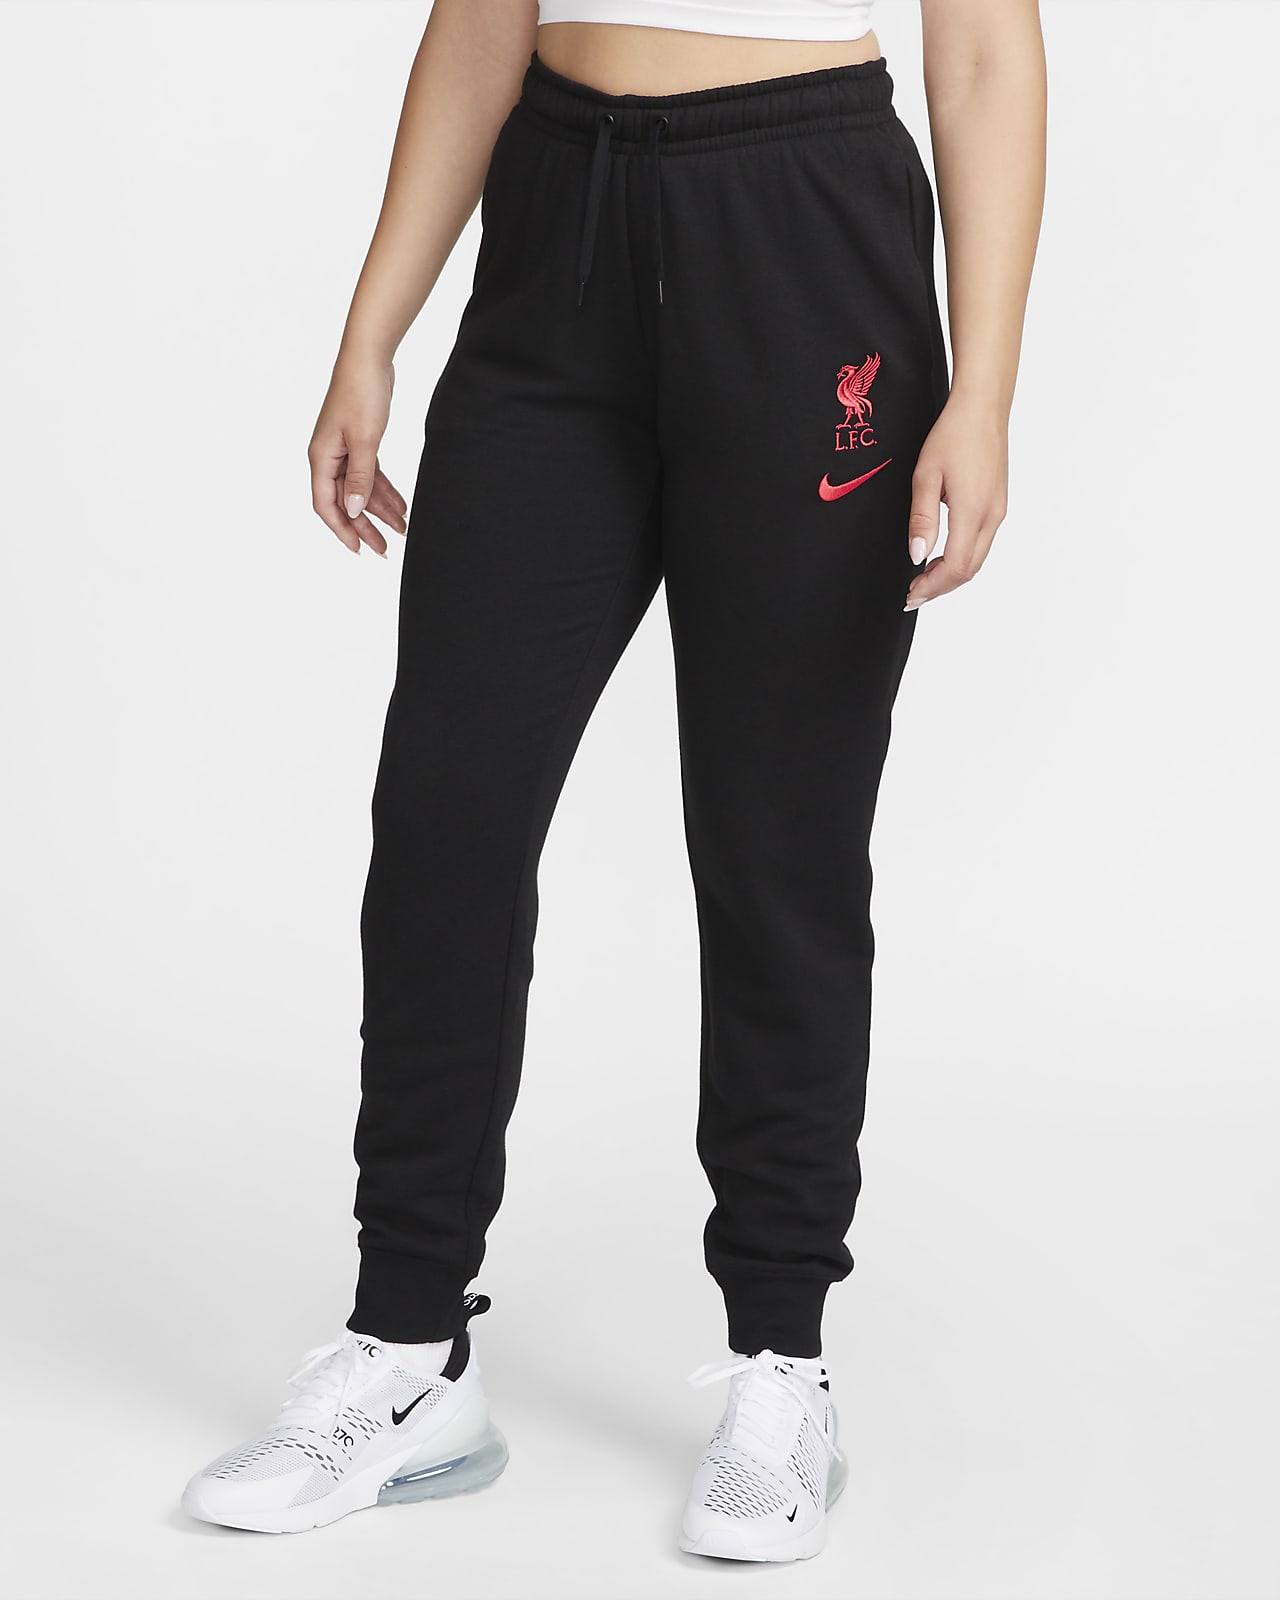 Marcha atrás mesa Valiente Liverpool FC Club Fleece Pantalón de talle medio - Mujer. Nike ES